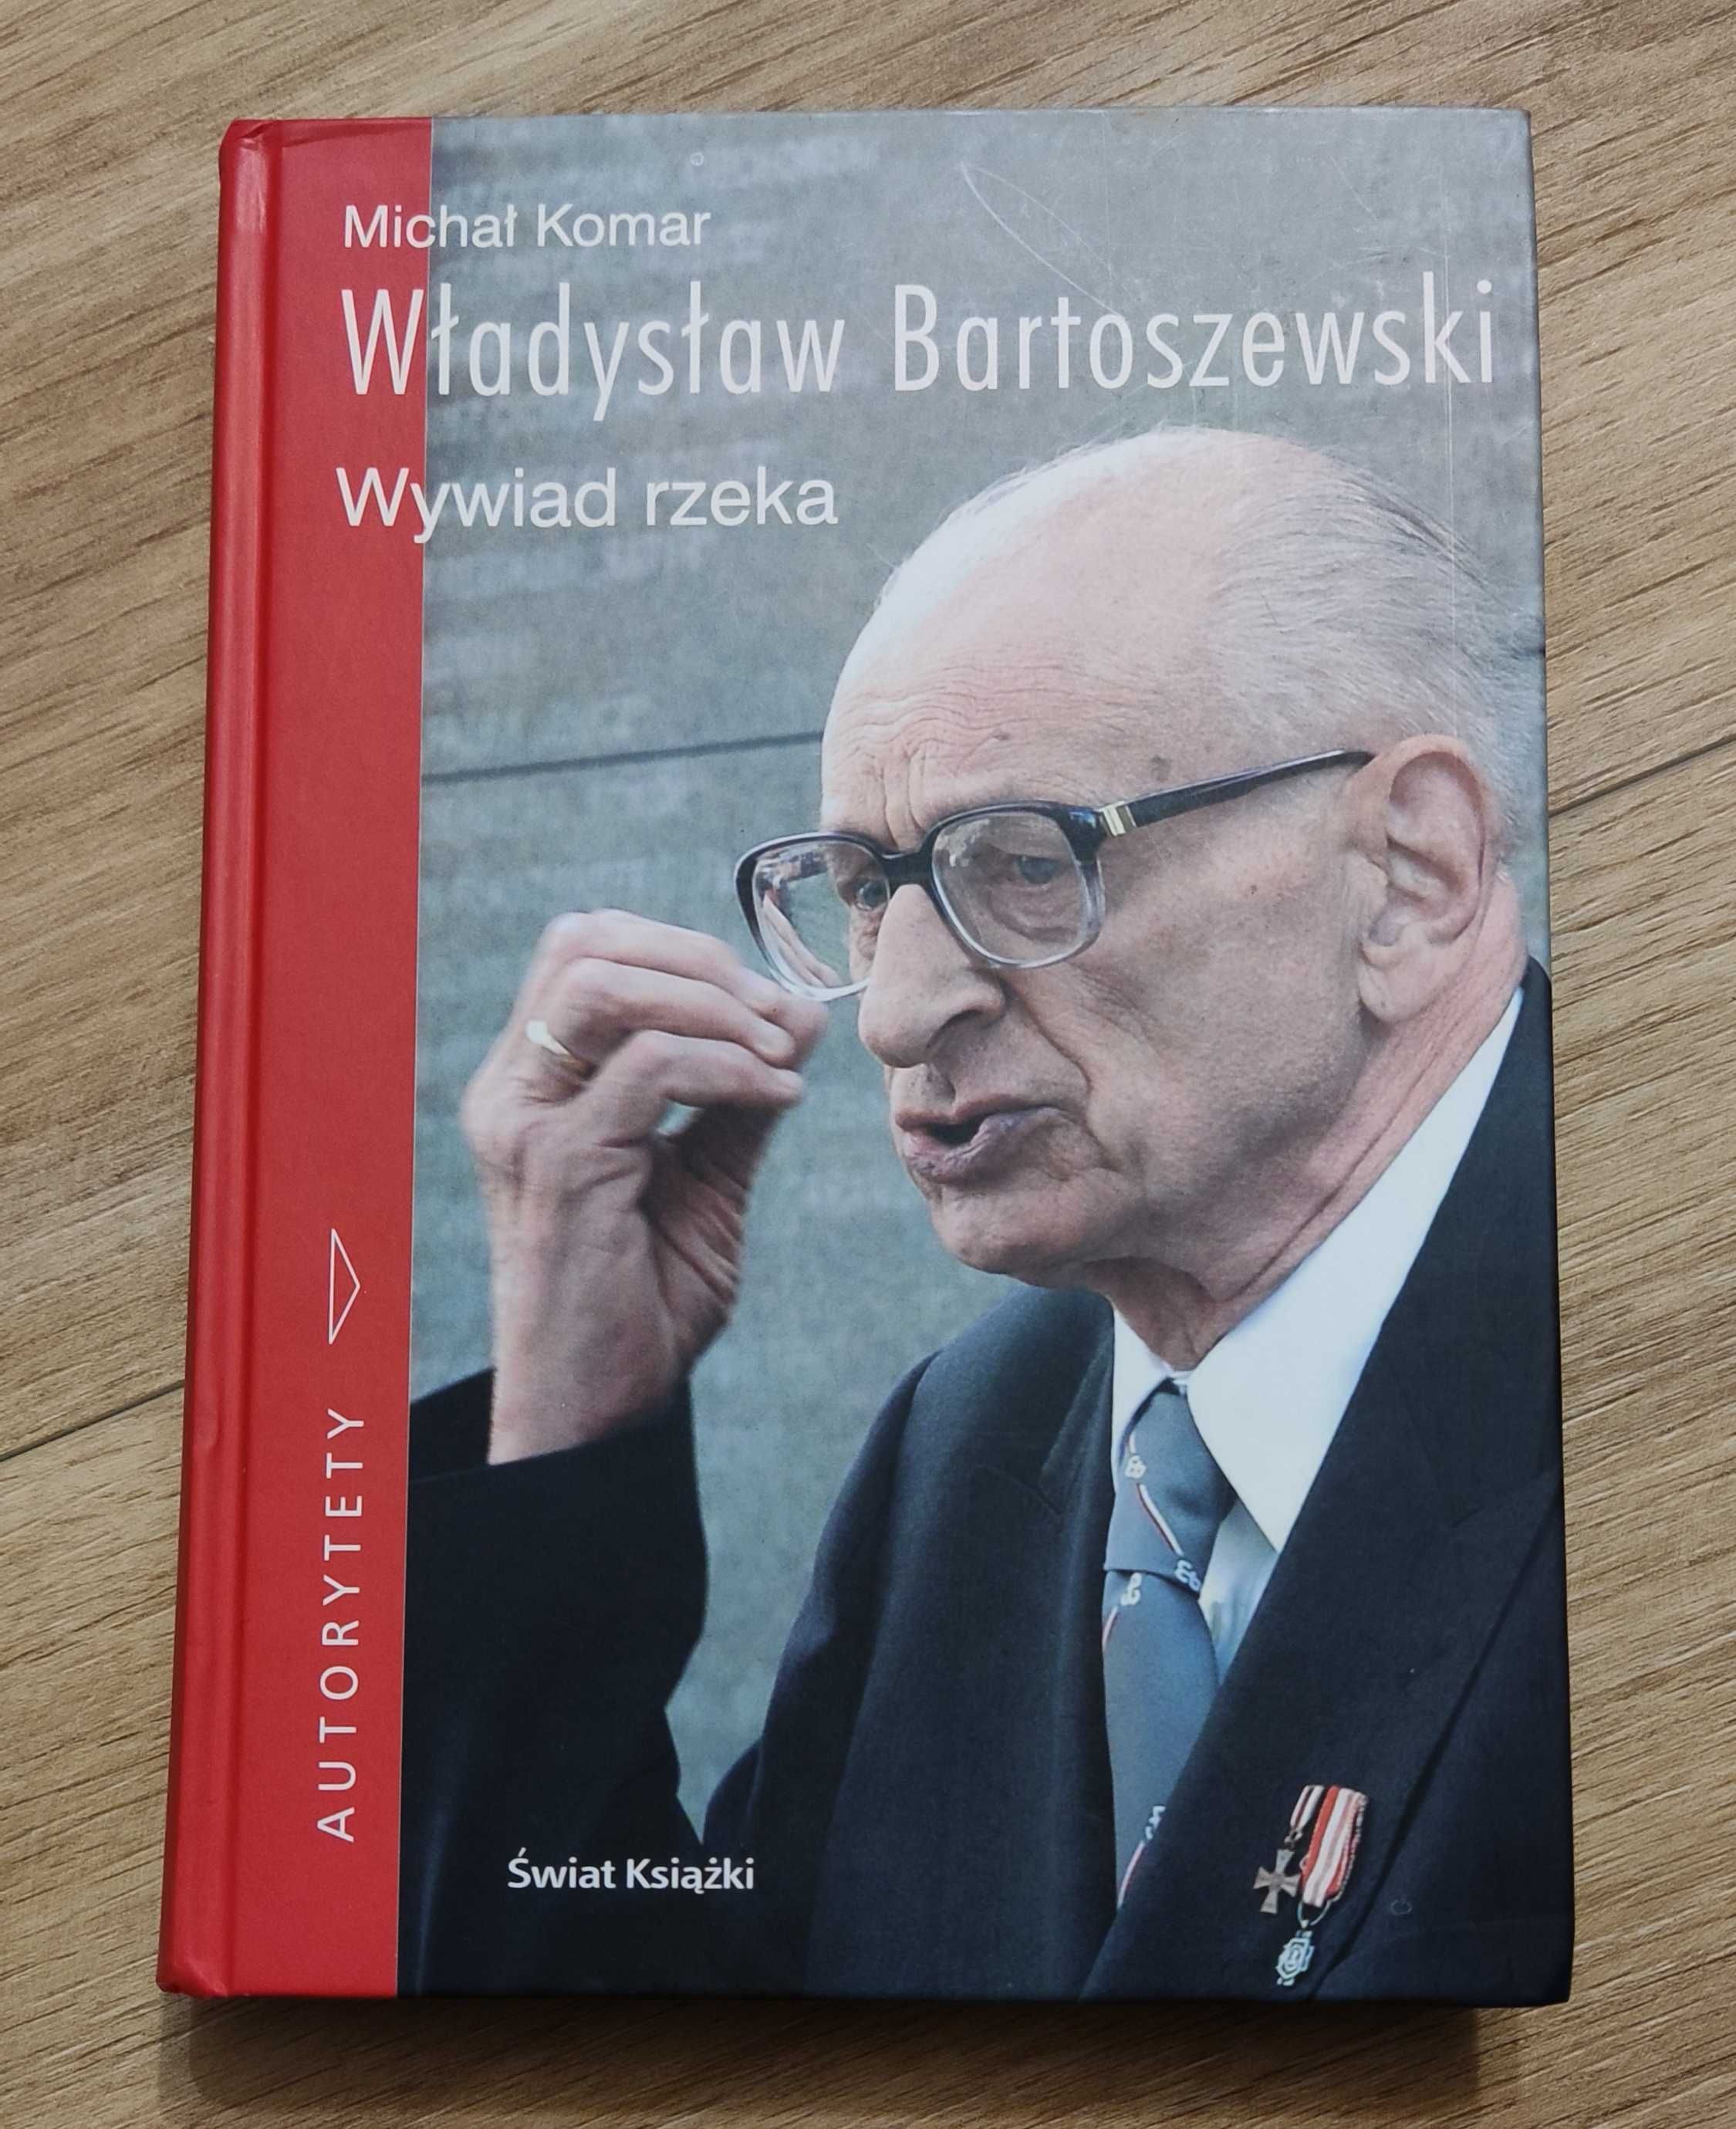 Władysław Bartoszewski "Wywiad rzeka"  autor: Michał Komar